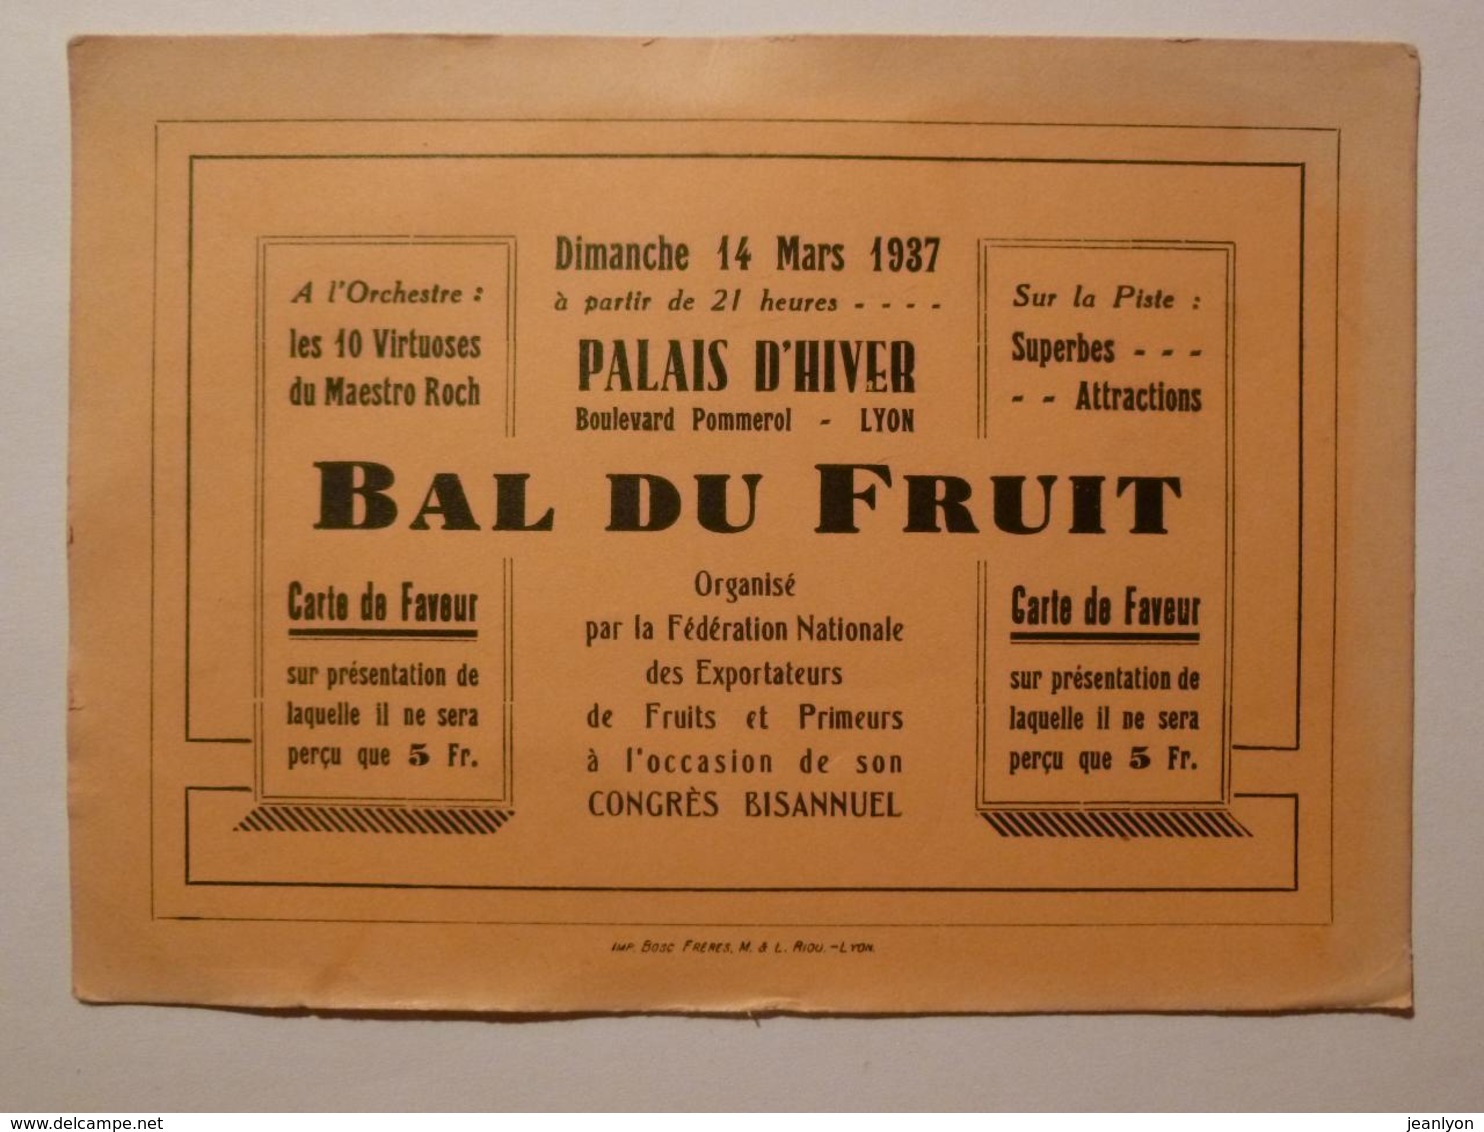 LYON / PALAIS HIVER - Boulevard POMMEROL - 14 MARS 1937 - BAL DES FRUITS / Carte De Faveur / Entrée Spectacle - Toegangskaarten